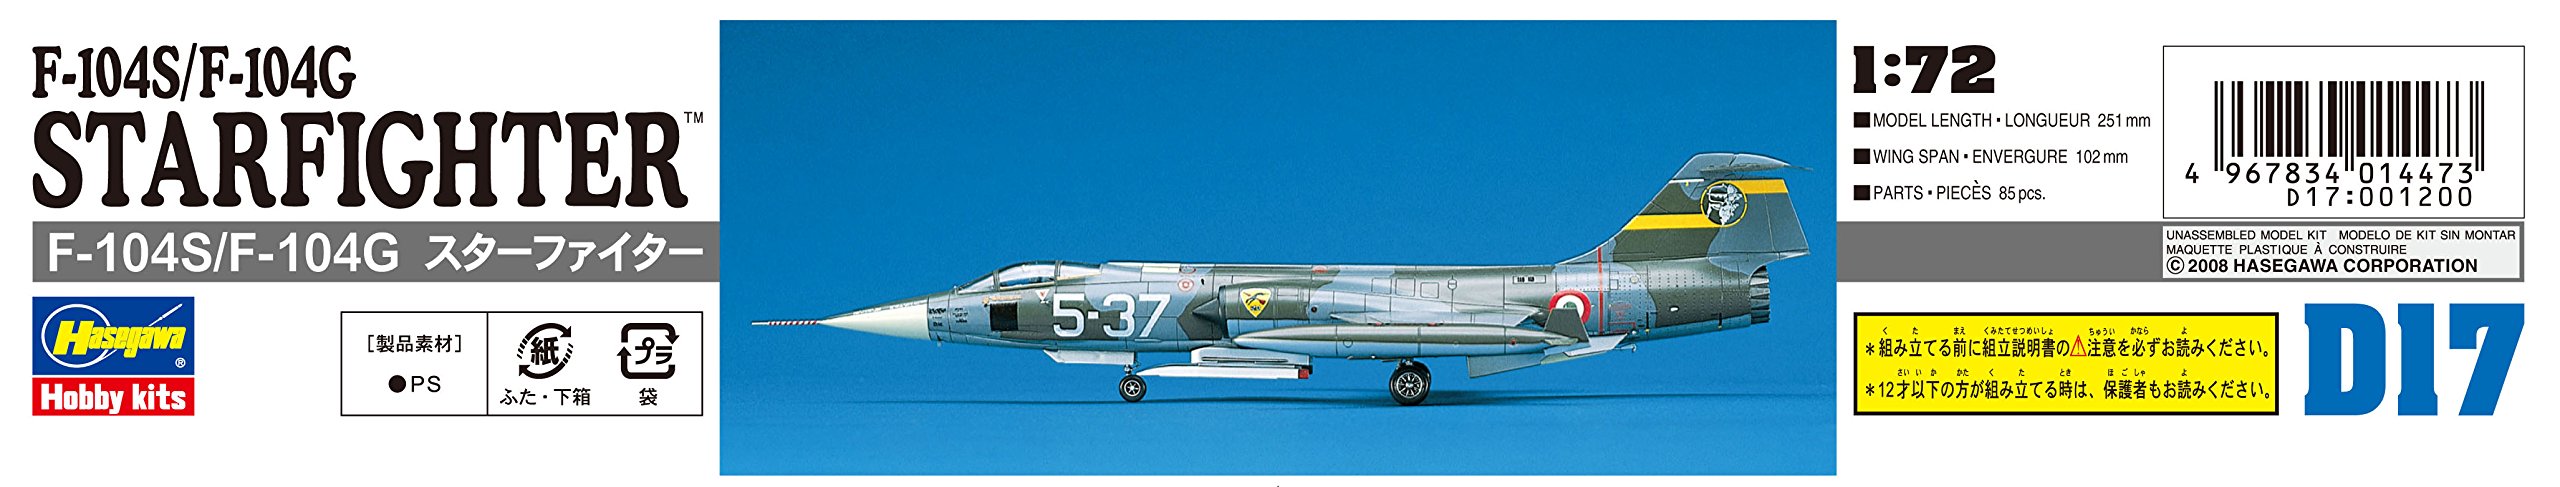 HASEGAWA D17 F-104S/F-104G Starfighter Italian 1/72 Scale Kit